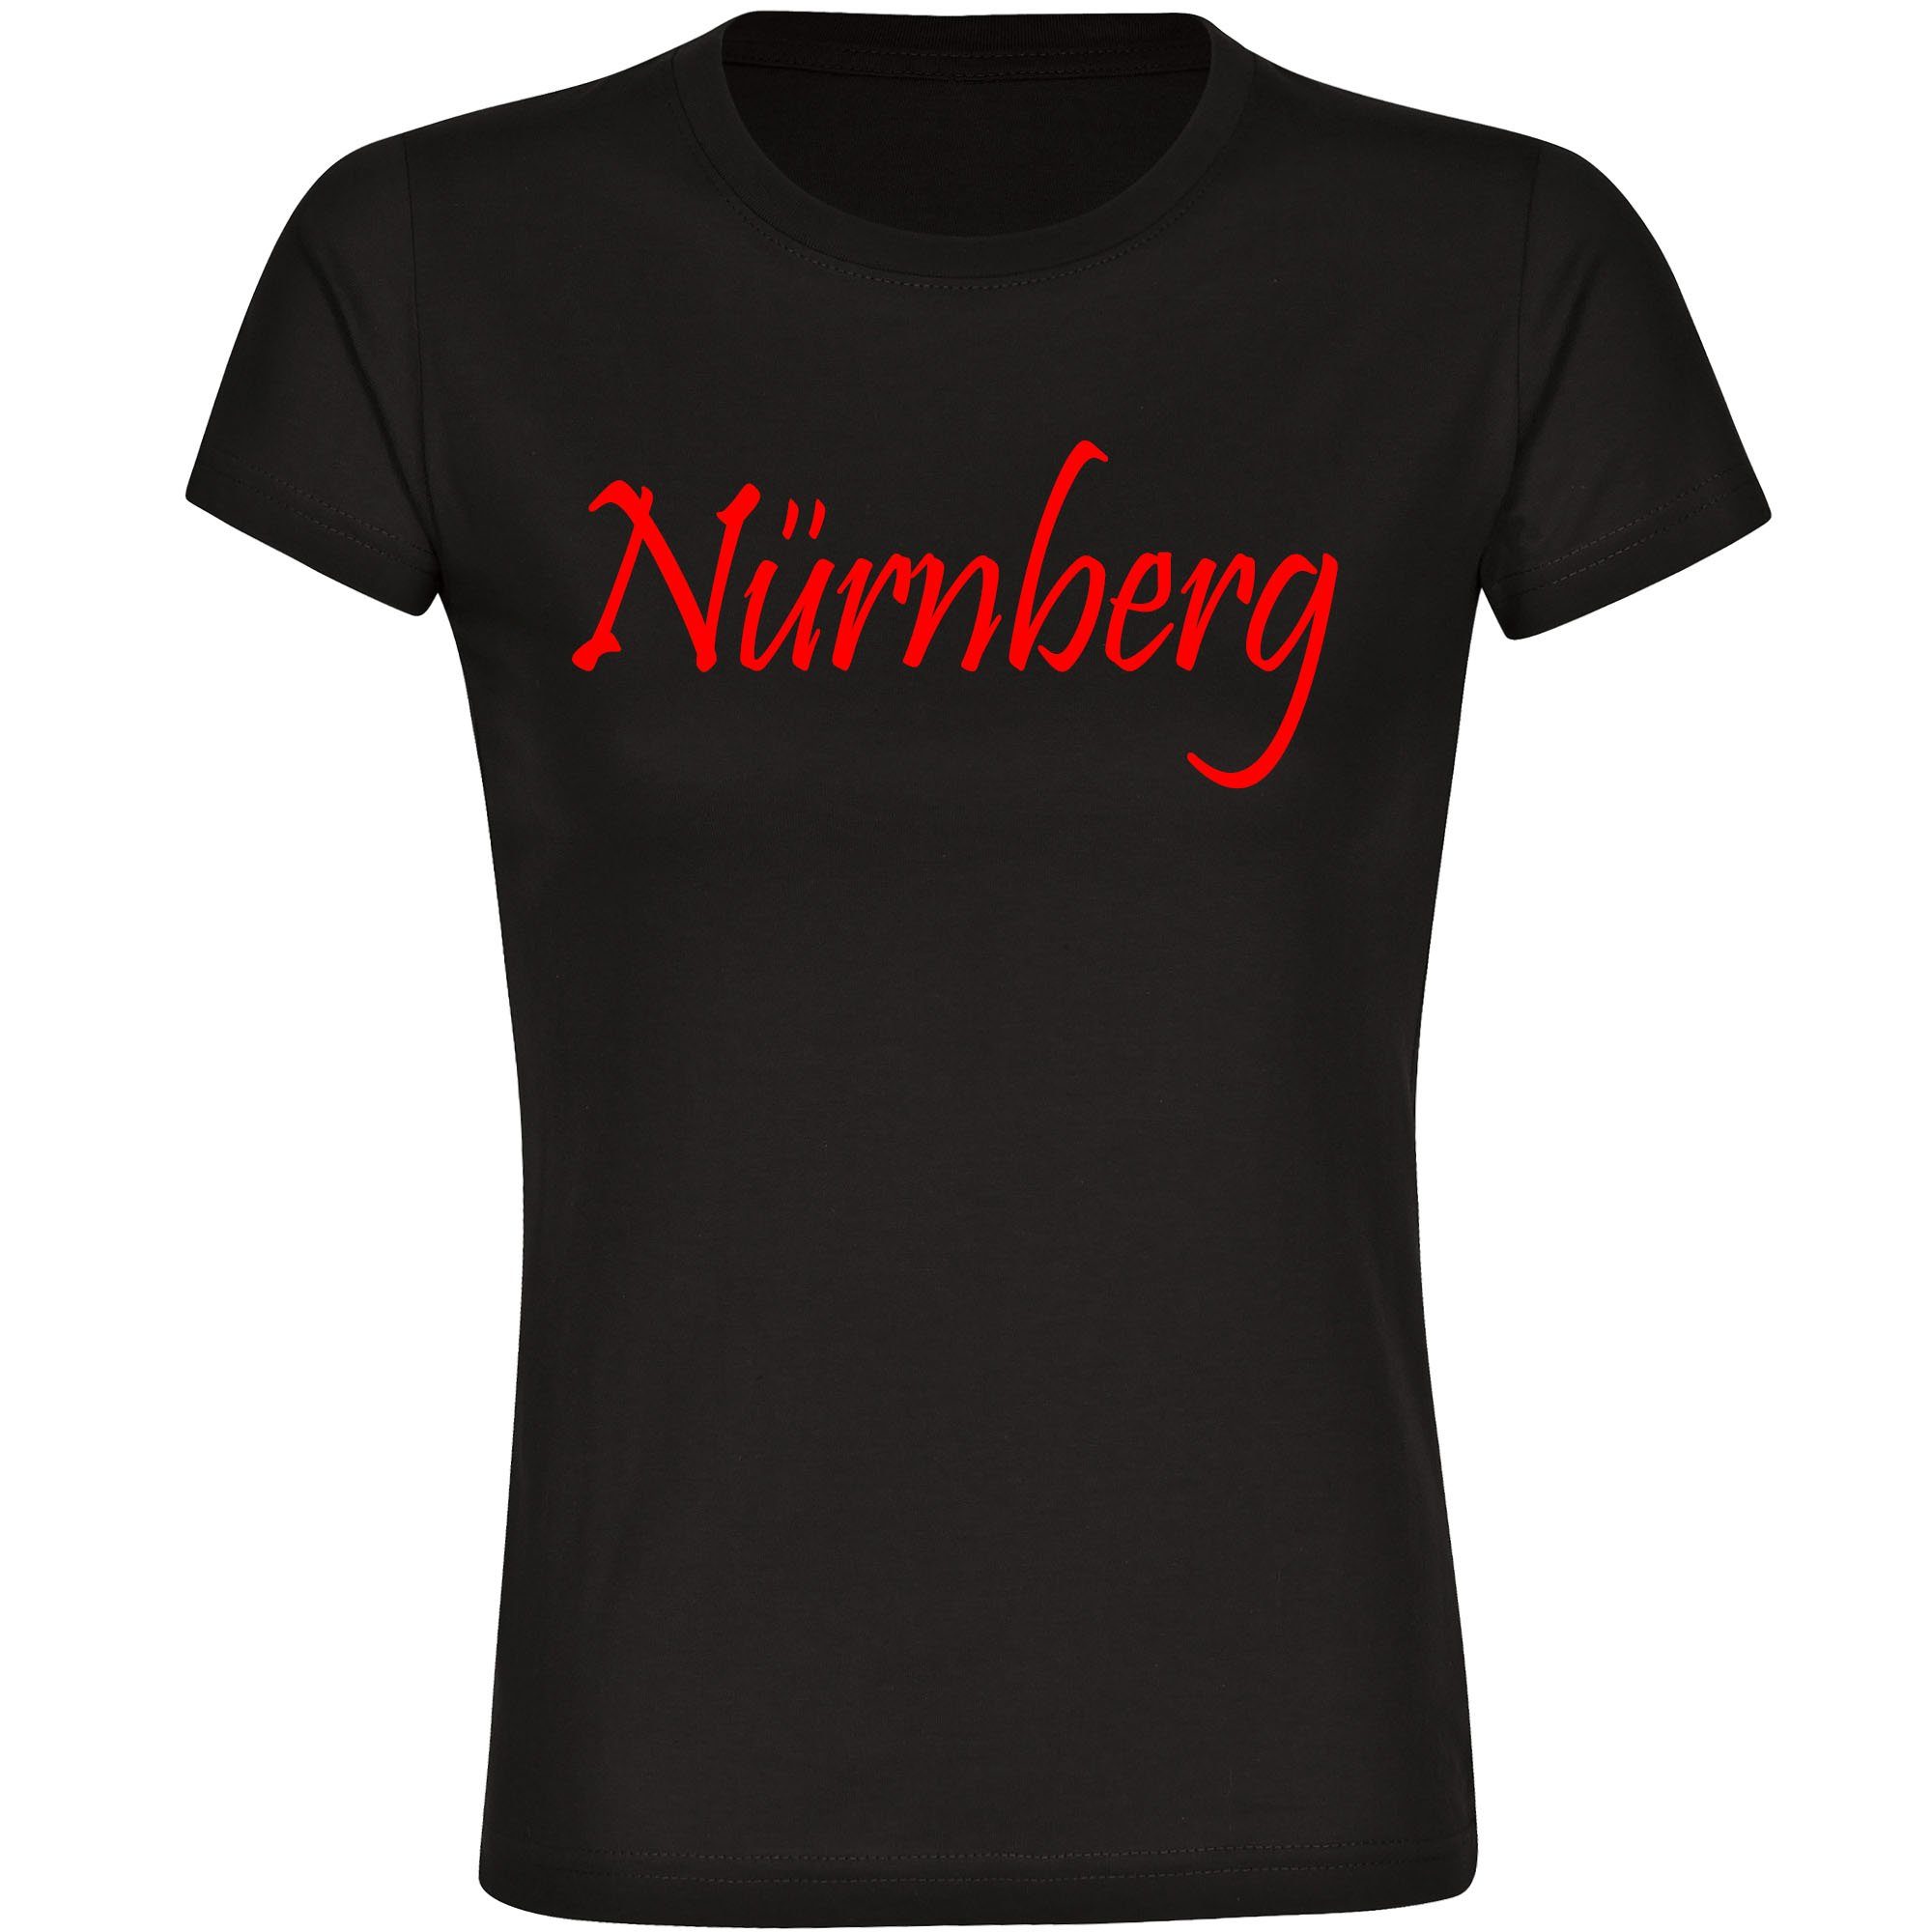 multifanshop T-Shirt Damen Nürnberg - Schriftzug - Frauen